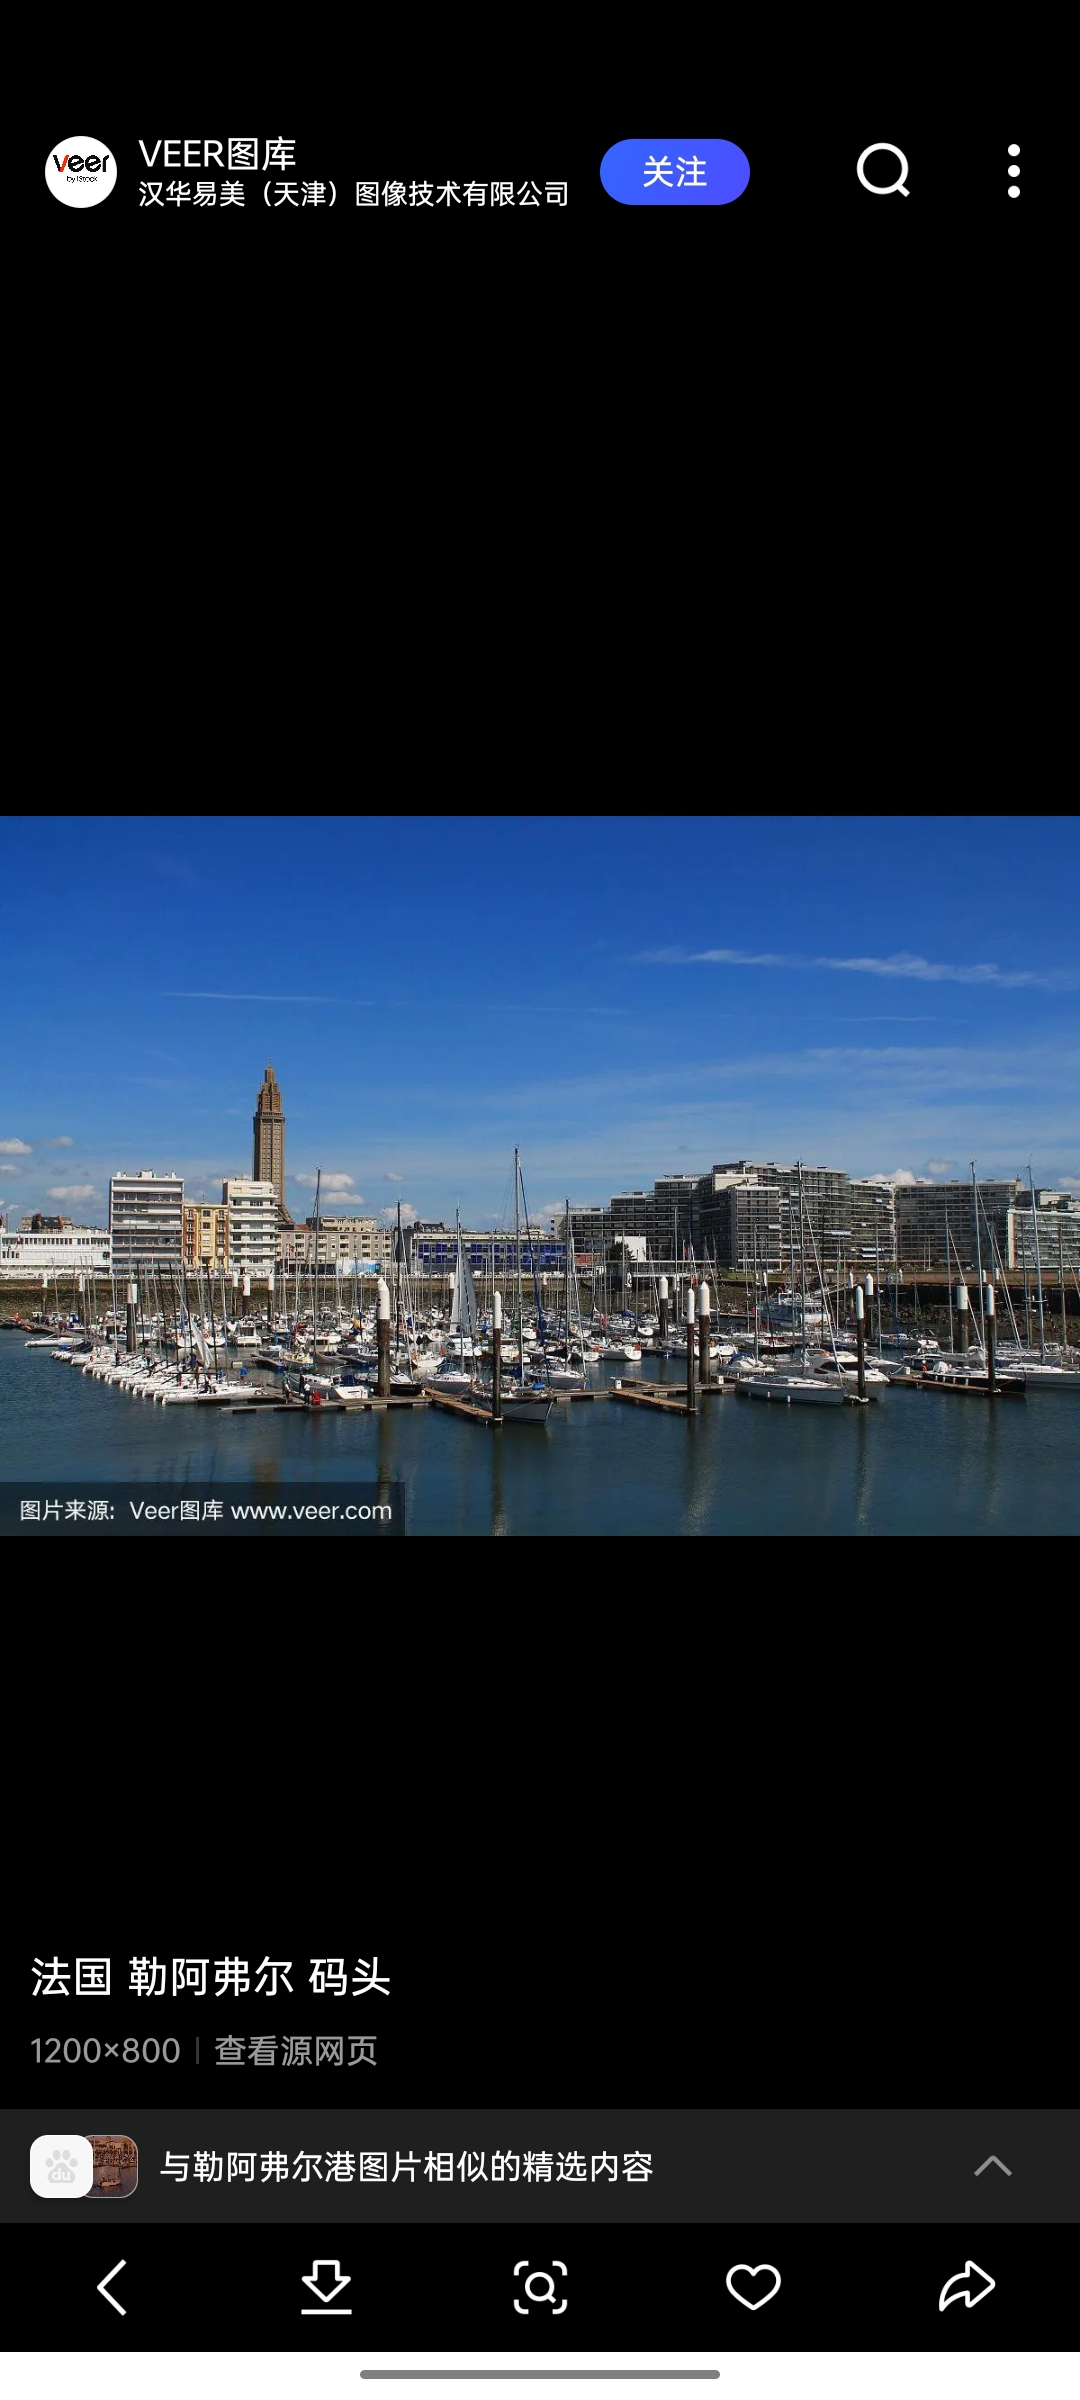 勒阿弗尔港（Le Havre）：位于法国西北沿海塞纳河口北岸，濒临塞纳湾的东侧，是法国第二大港和最大